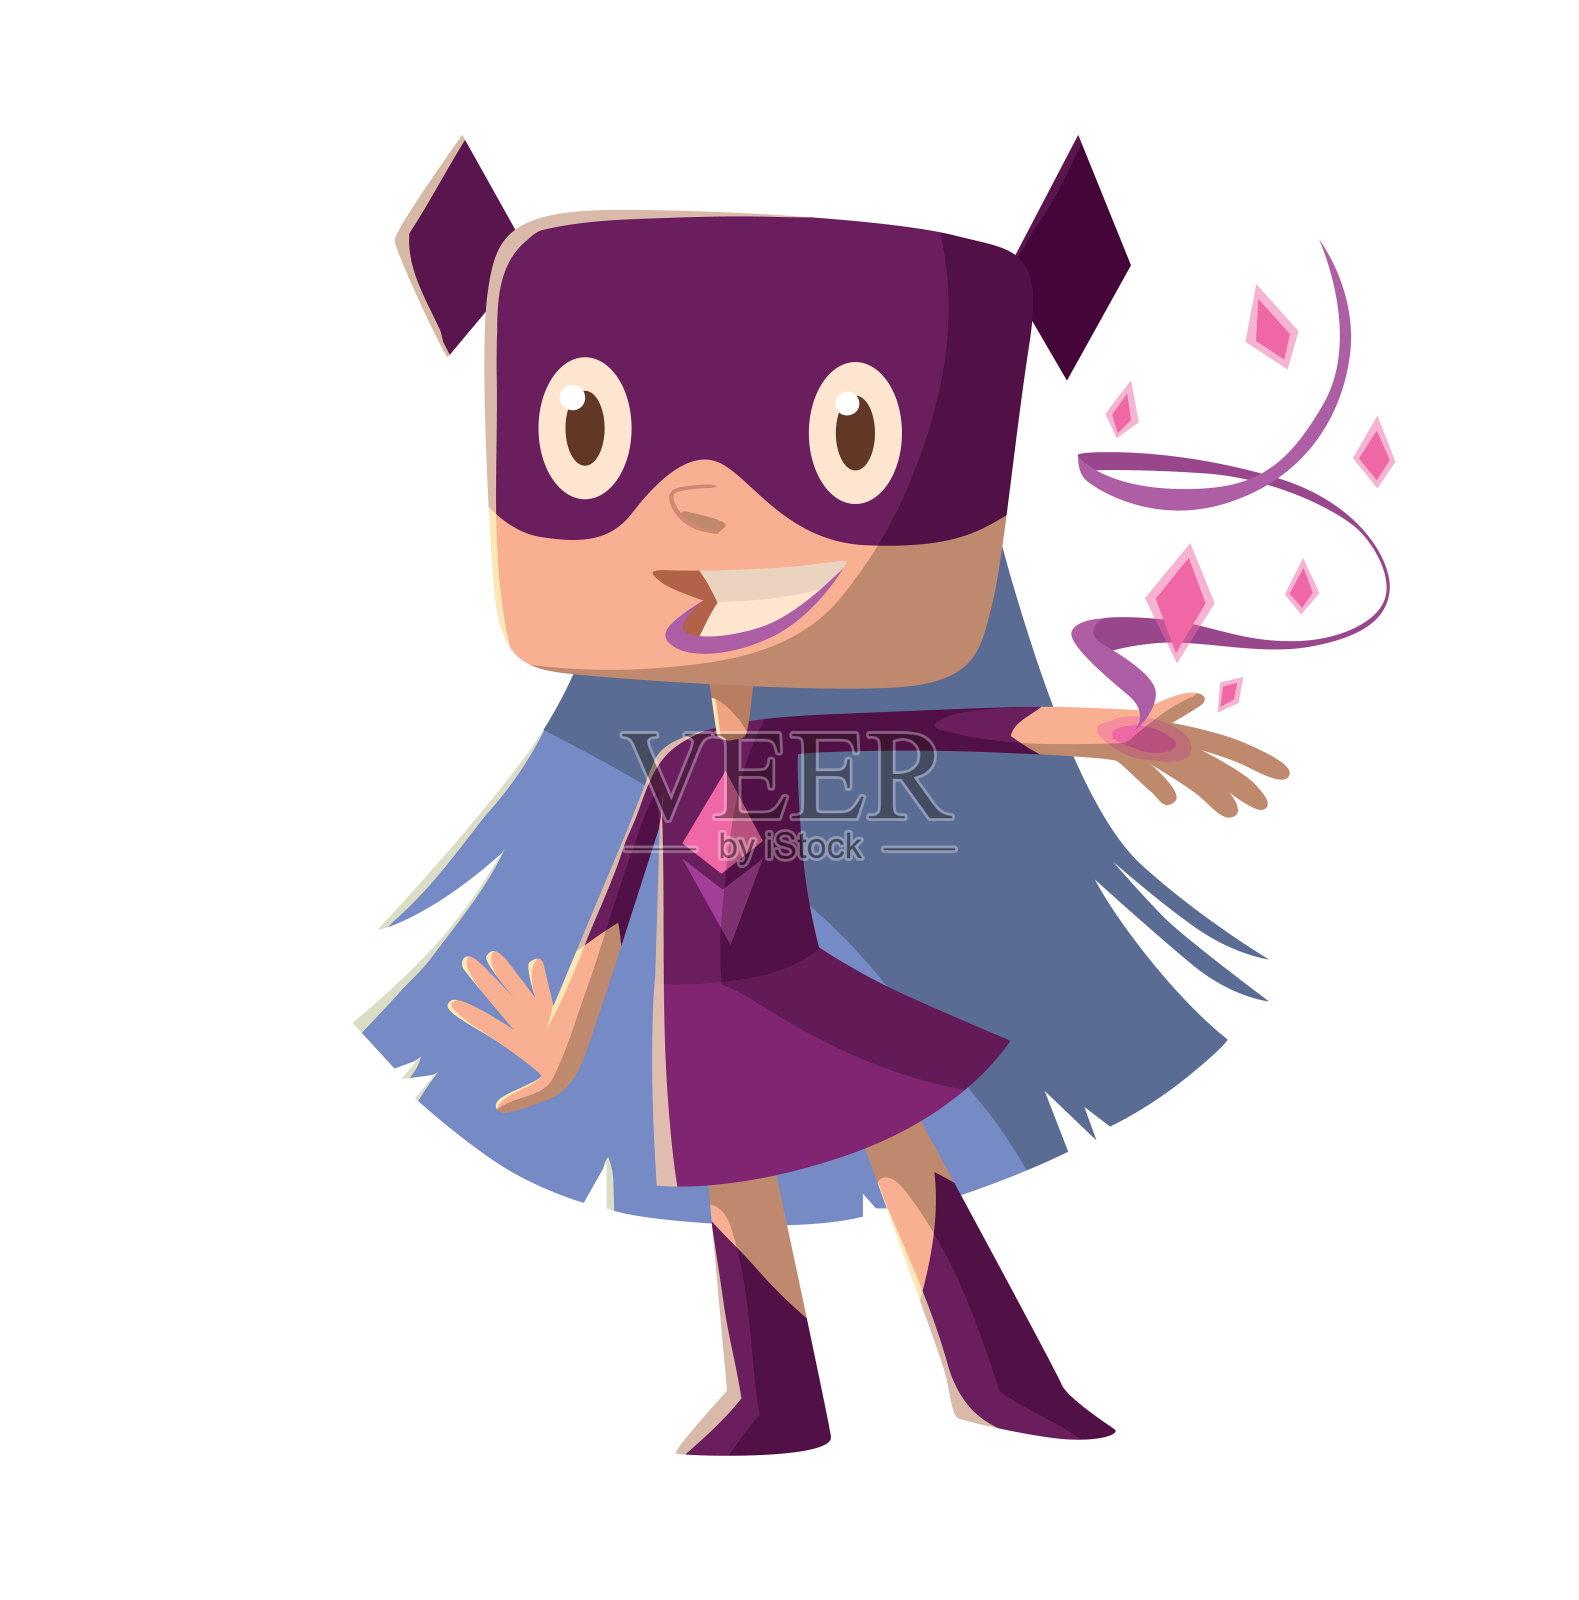 穿着紫色超级英雄服装的有趣小女孩设计元素图片